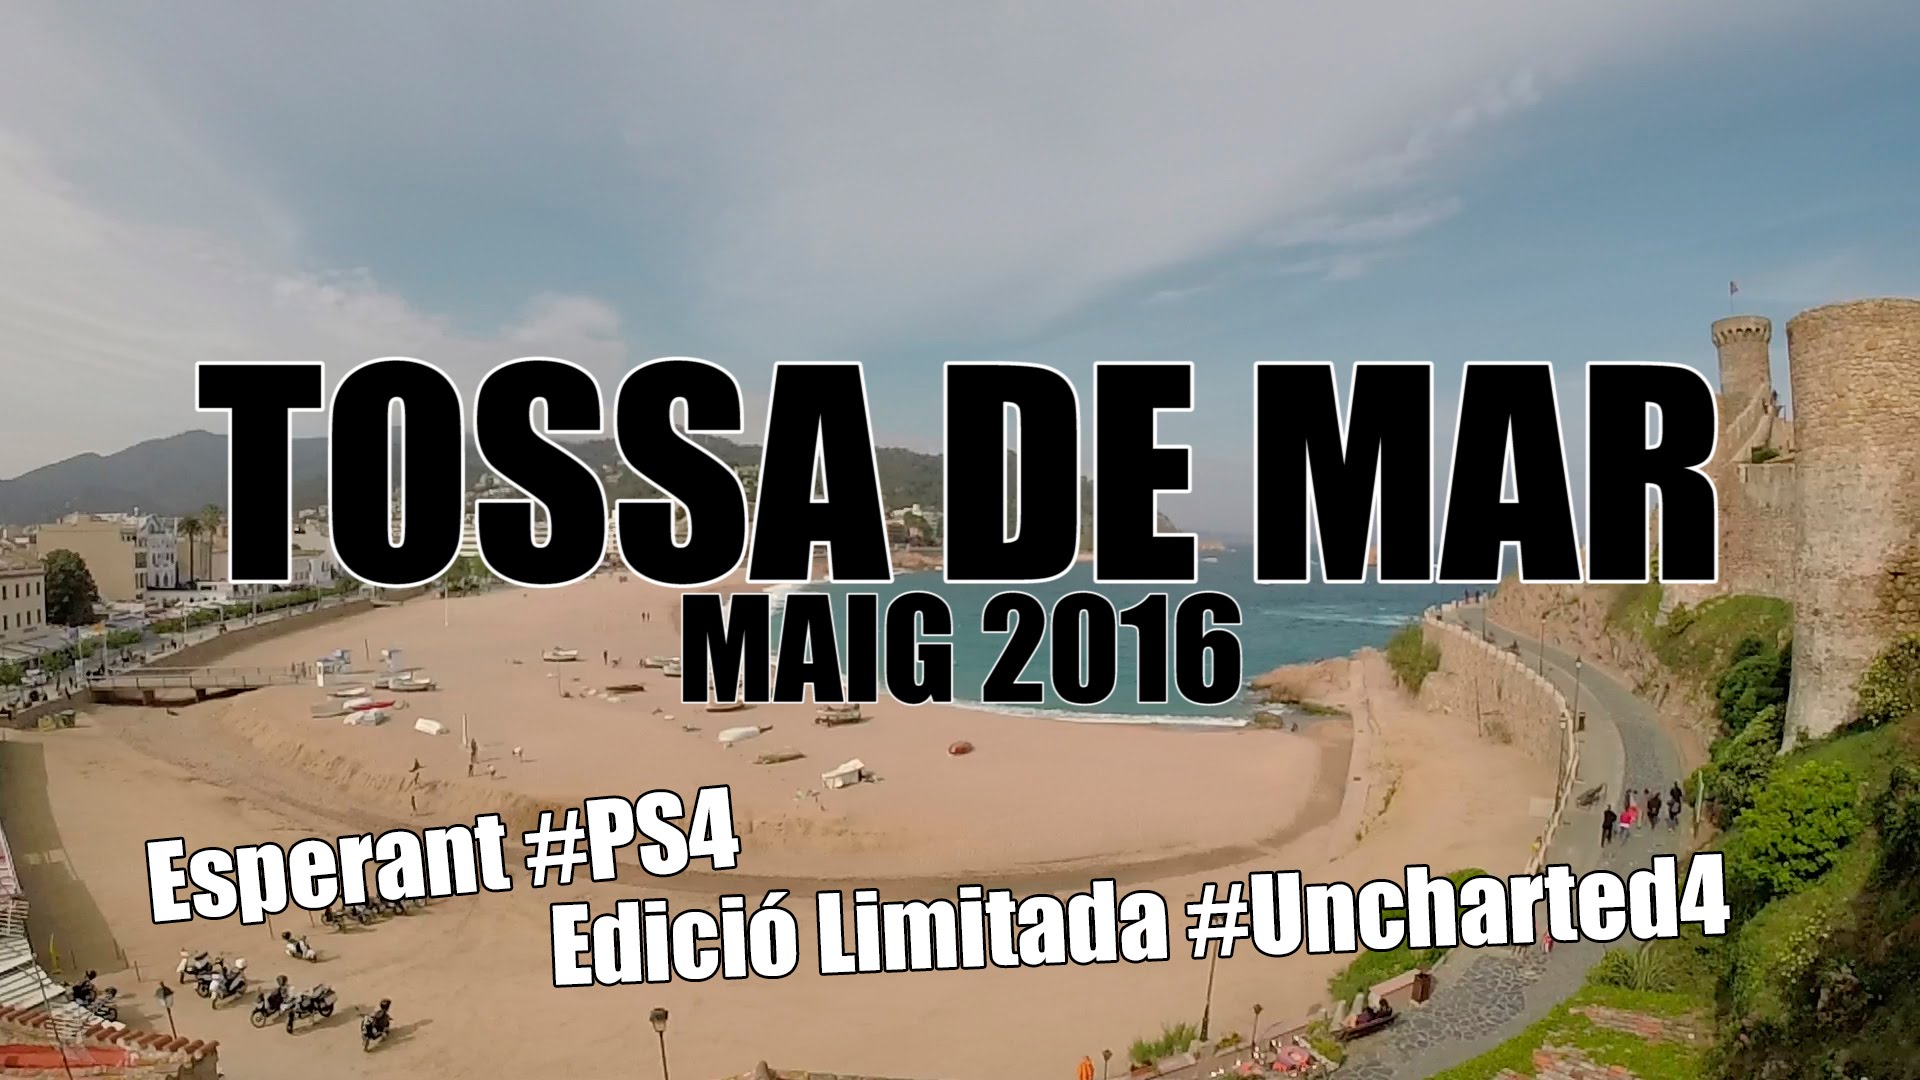 Esperant PS4 Edició Limitada Uncharted 4 a Tossa de Mar de EdgarAstroCat